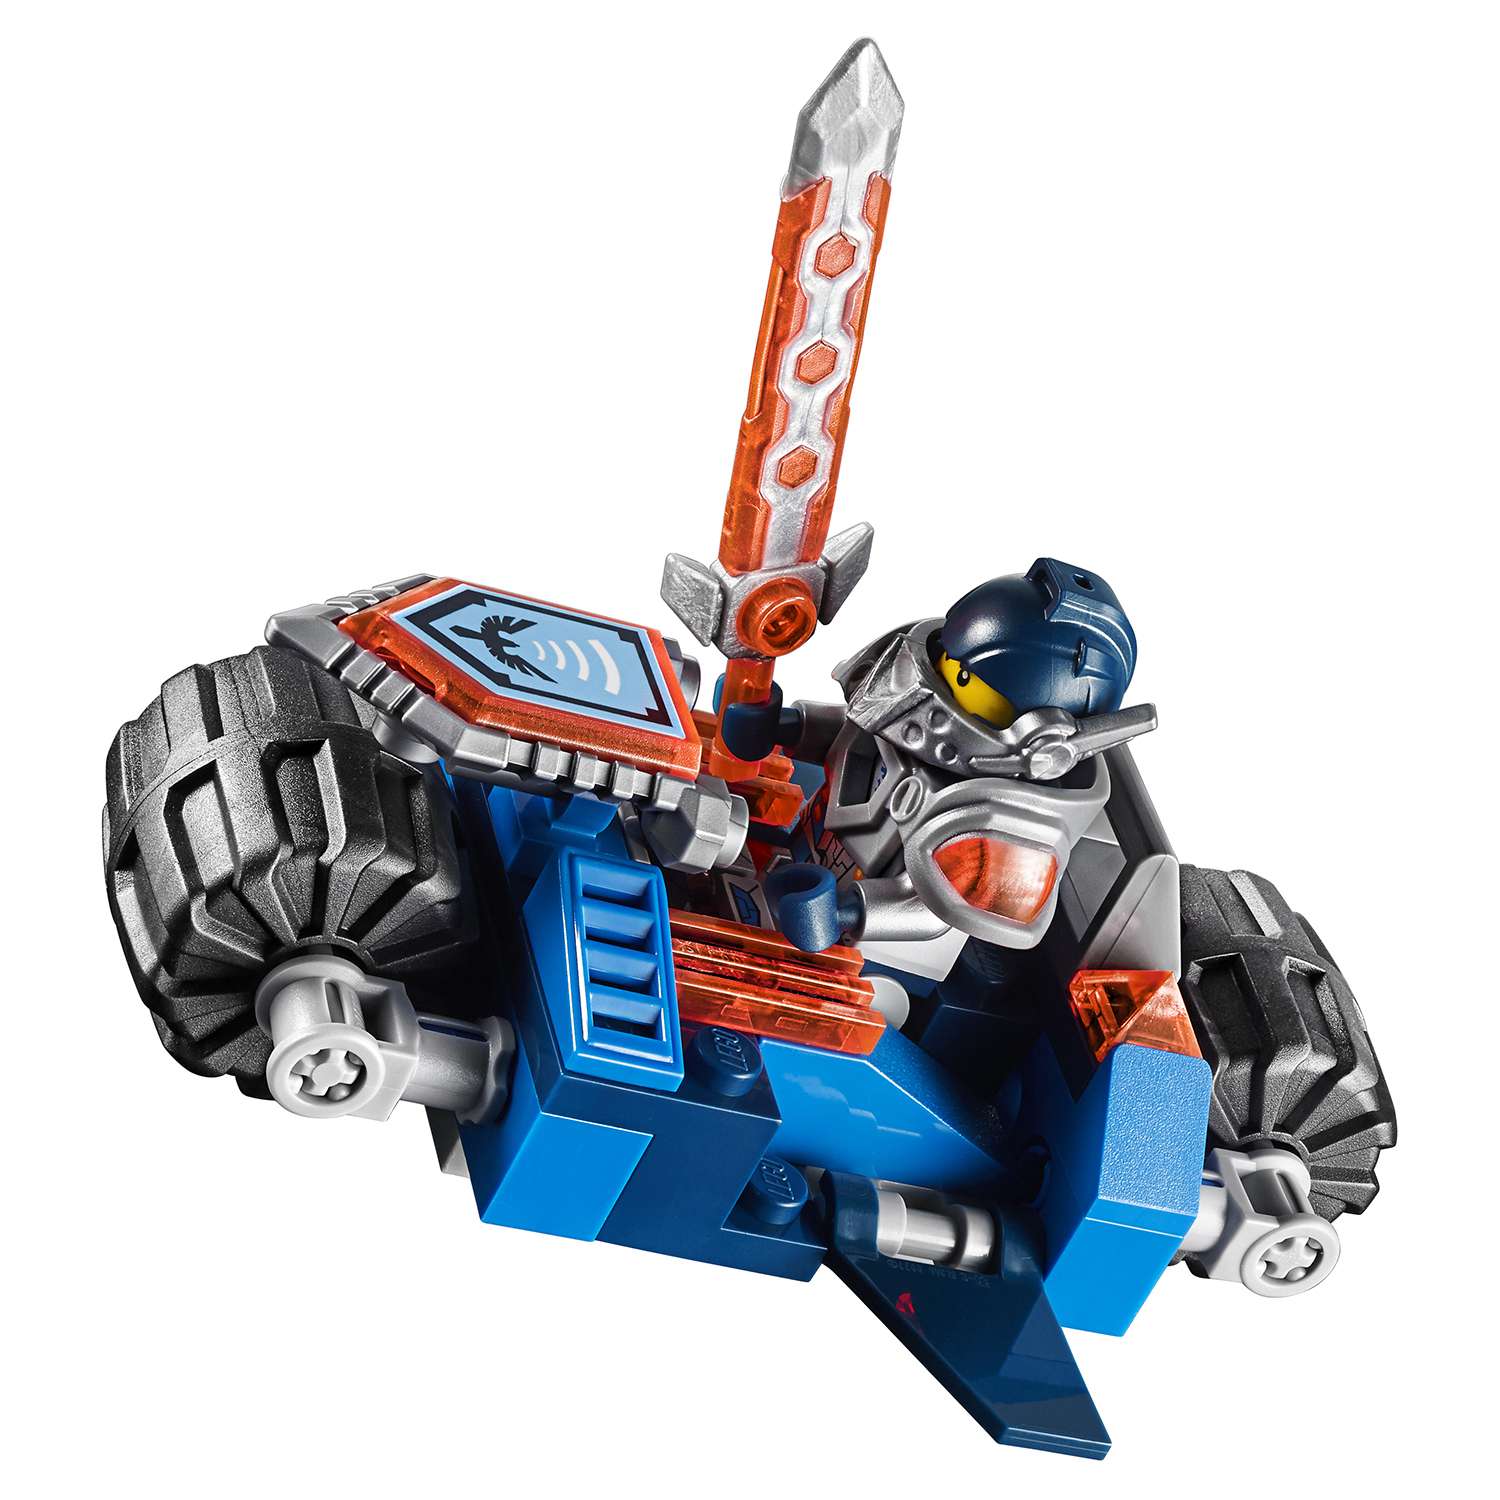 Конструктор LEGO Nexo Knights Фортрекс - мобильная крепость (70317) - фото 11